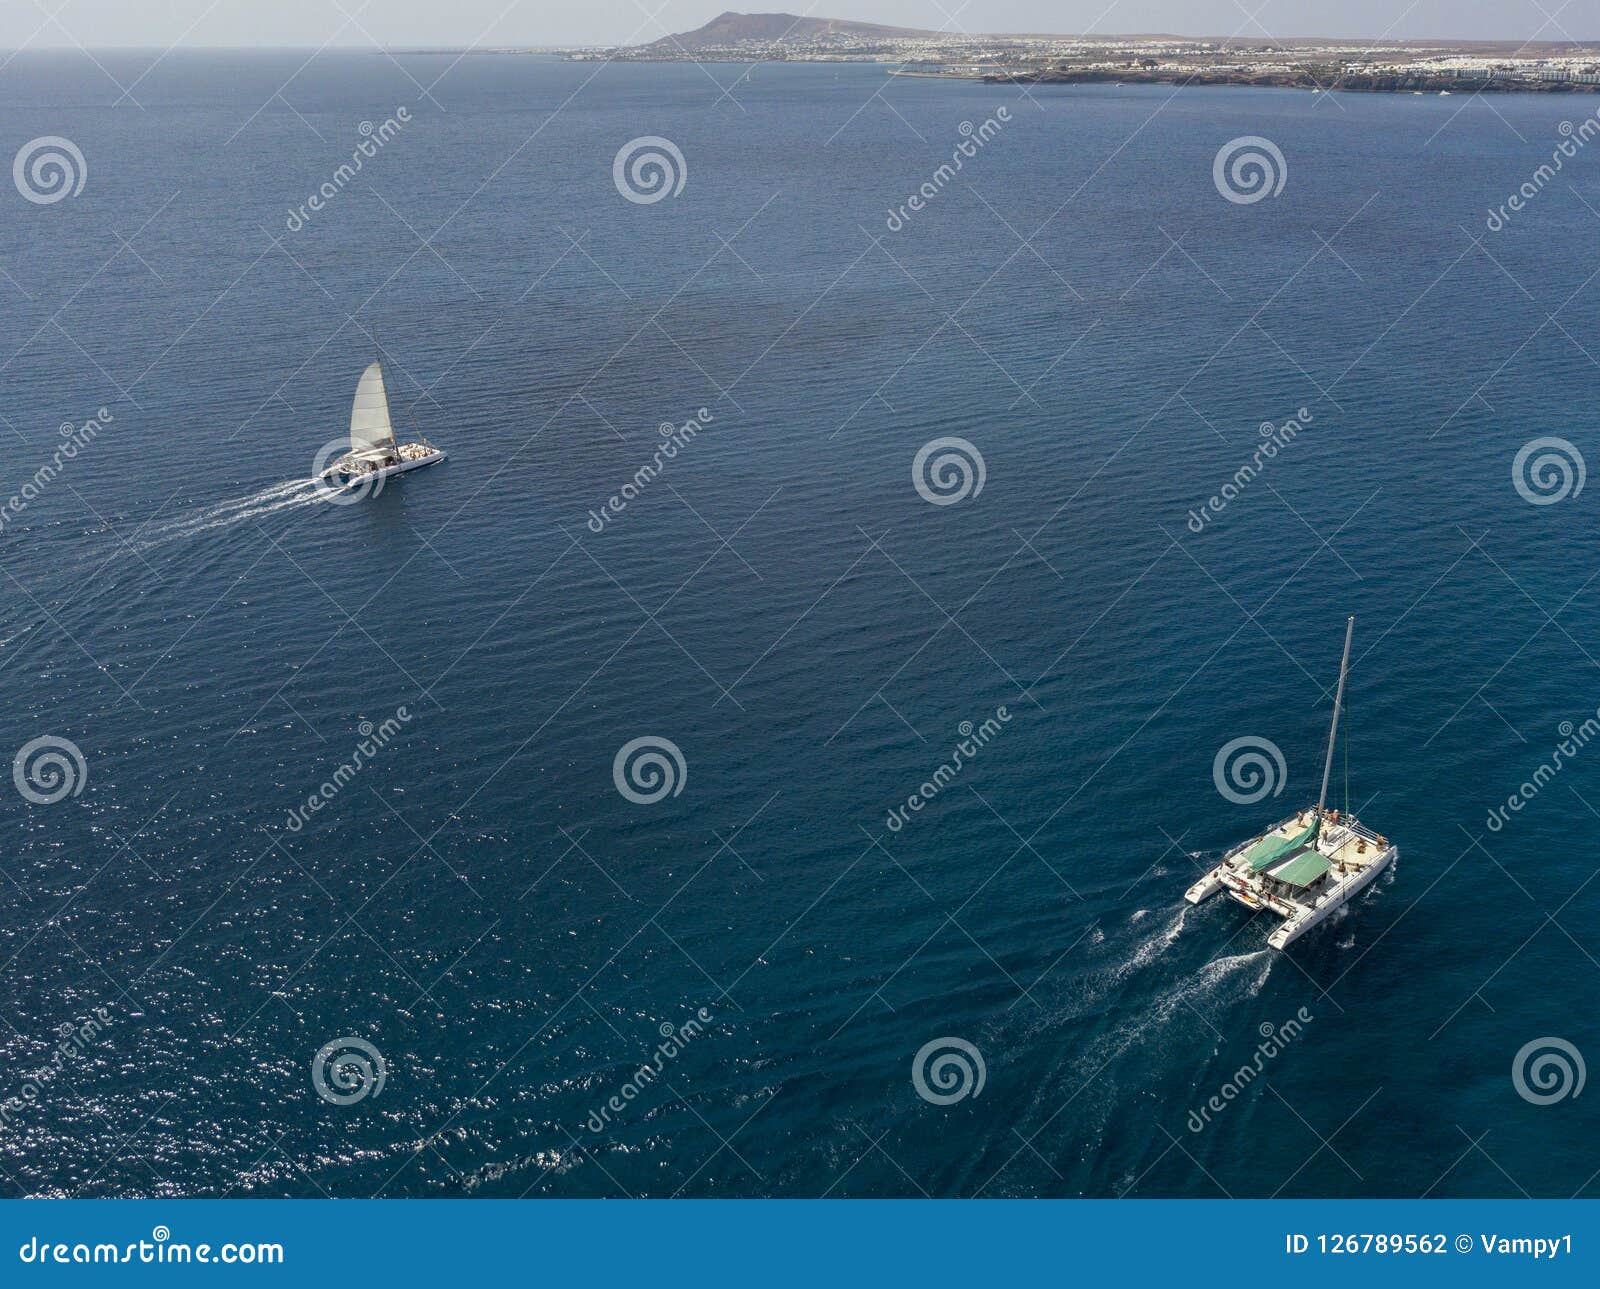 aerial view of a catamaran crossing the ocean waters. lanzarote, canaries, spain